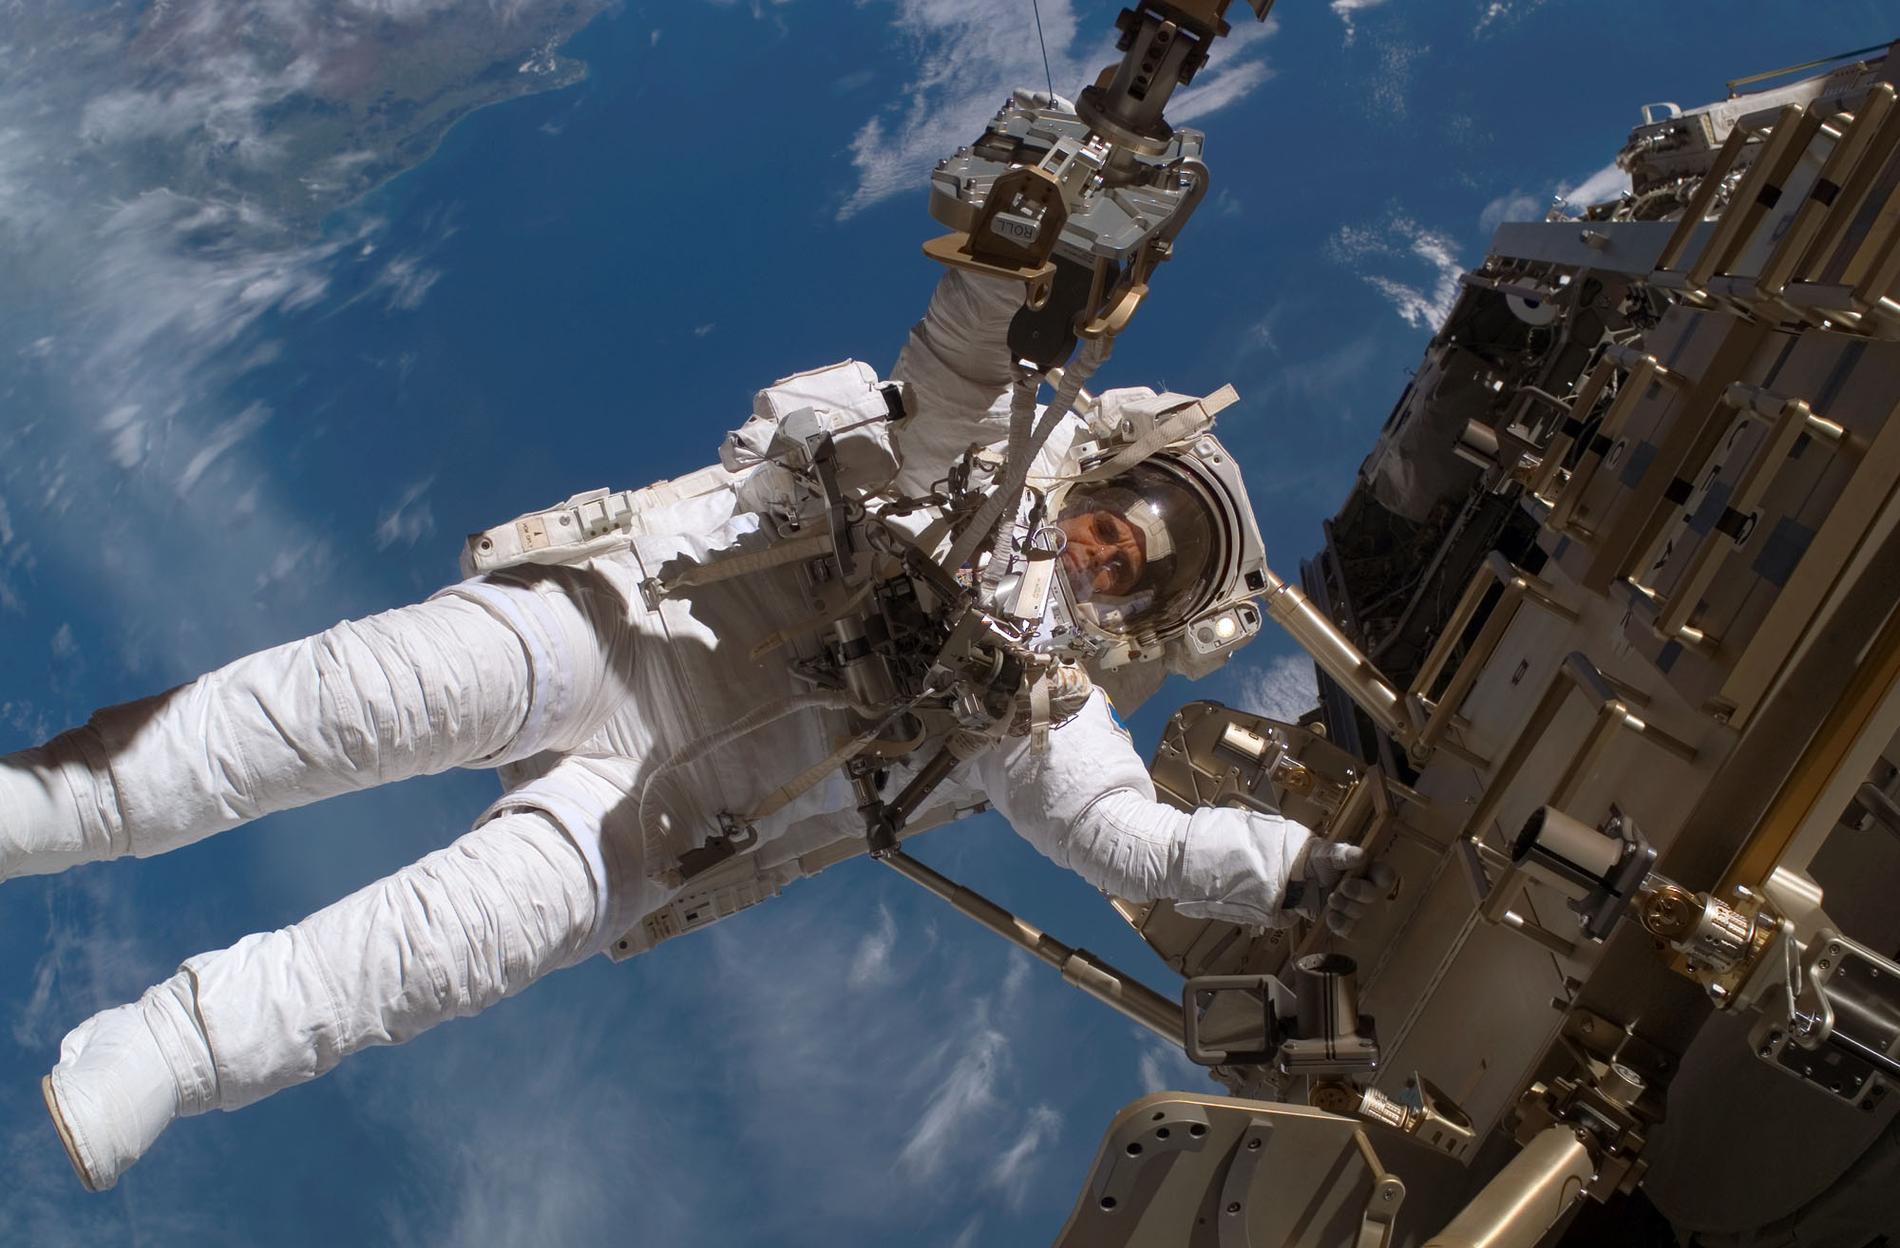 Nasa har lagt ner över 200 miljoner dollar på att ta fram nya rymddräkter, men hittills har resultatet varit klent. Bilden visar Christer Fuglesang under en av promenaderna vid den internationella rymdstationen ISS i december 2006.